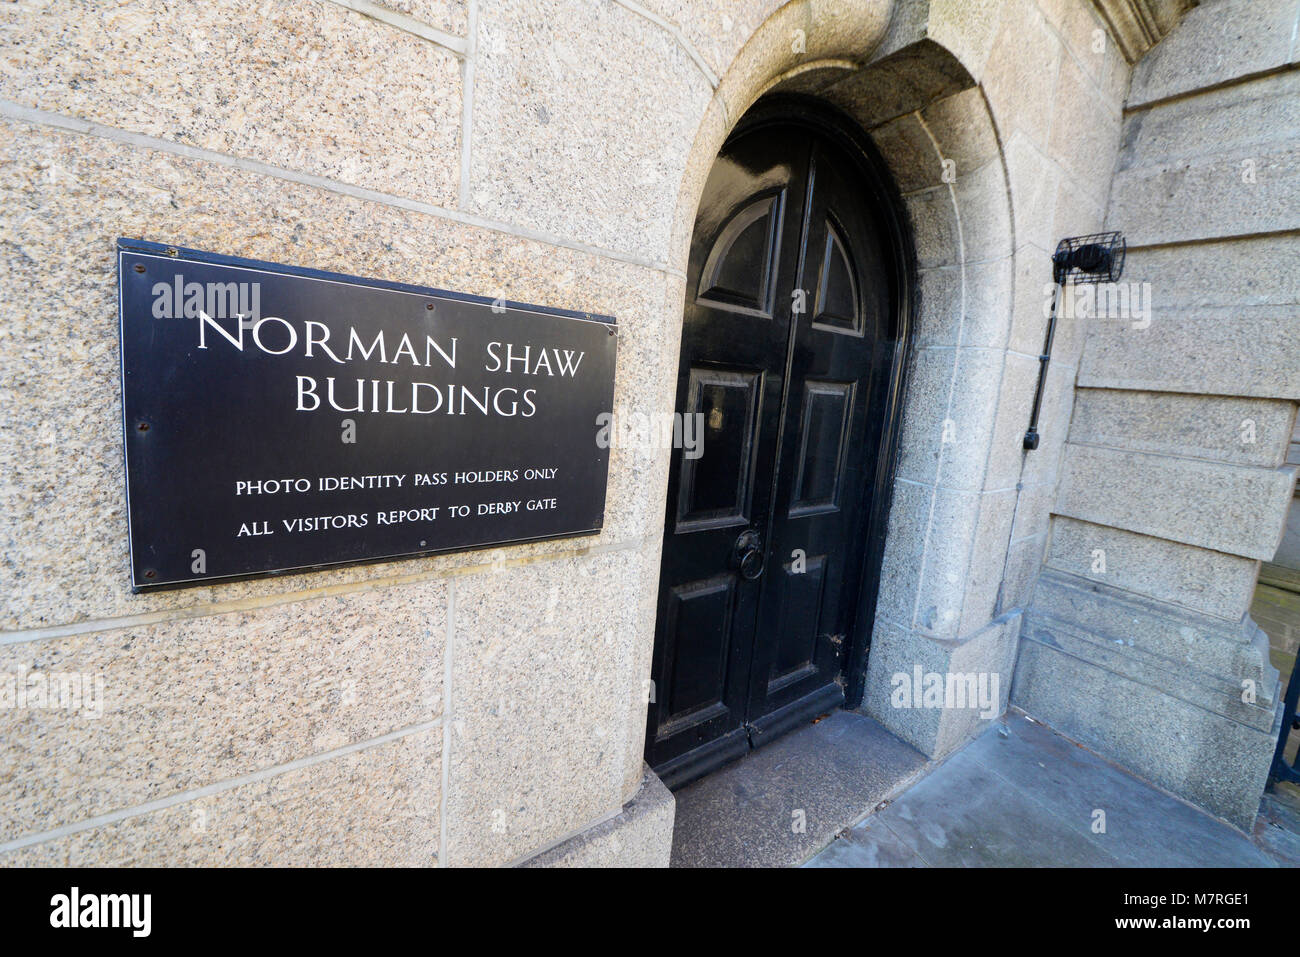 Die Norman Shaw Gebäude (Ehemals New Scotland Yard bekannt) sind ein paar Gebäude in Westminster, London. Seite Eingang mit Sicherheit Warnung Stockfoto